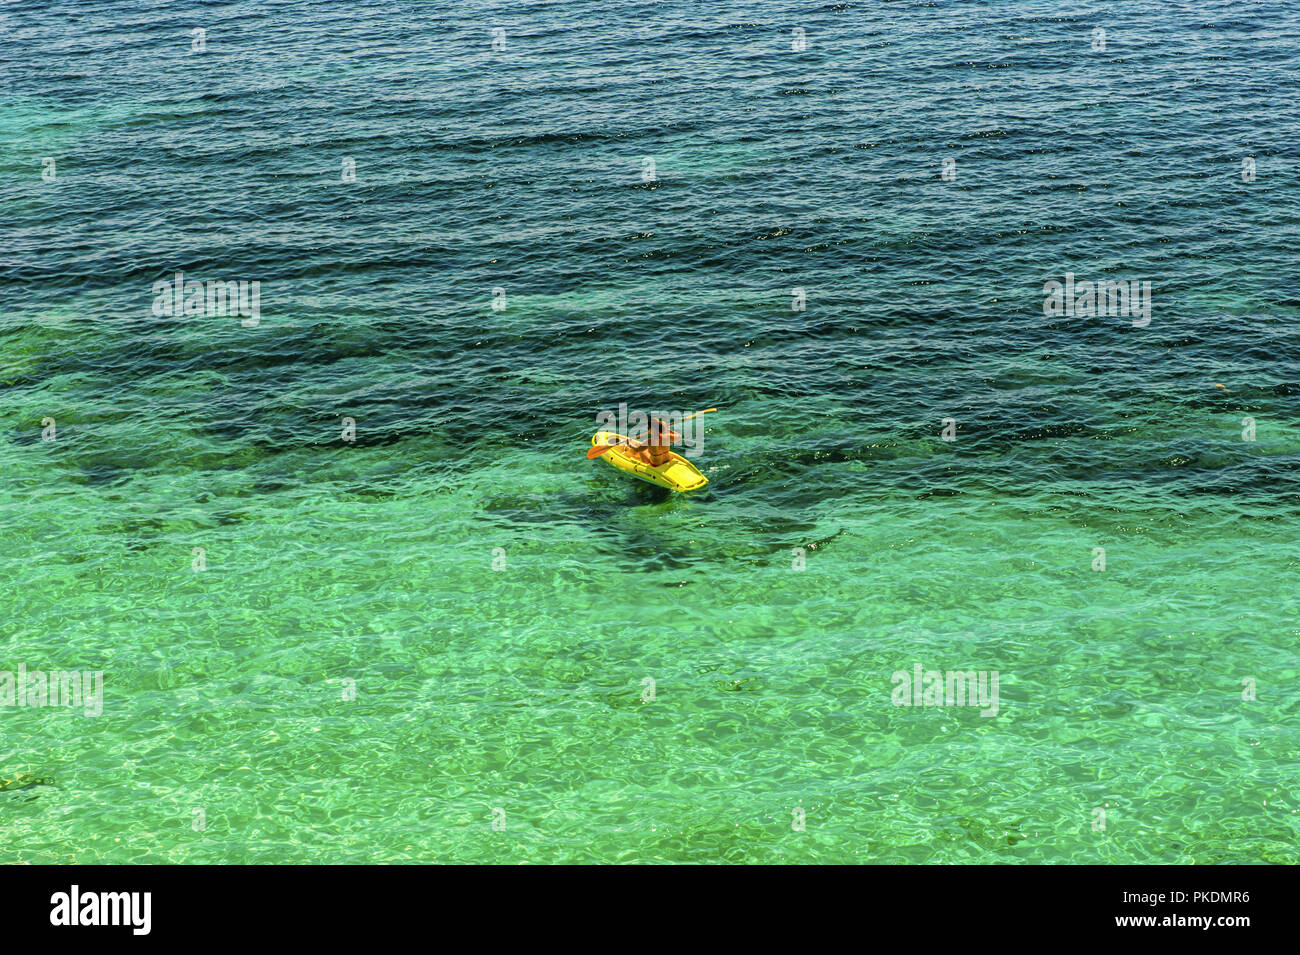 Una sola mujer prácticas en un kayak de mar kayak amarillo Foto de stock